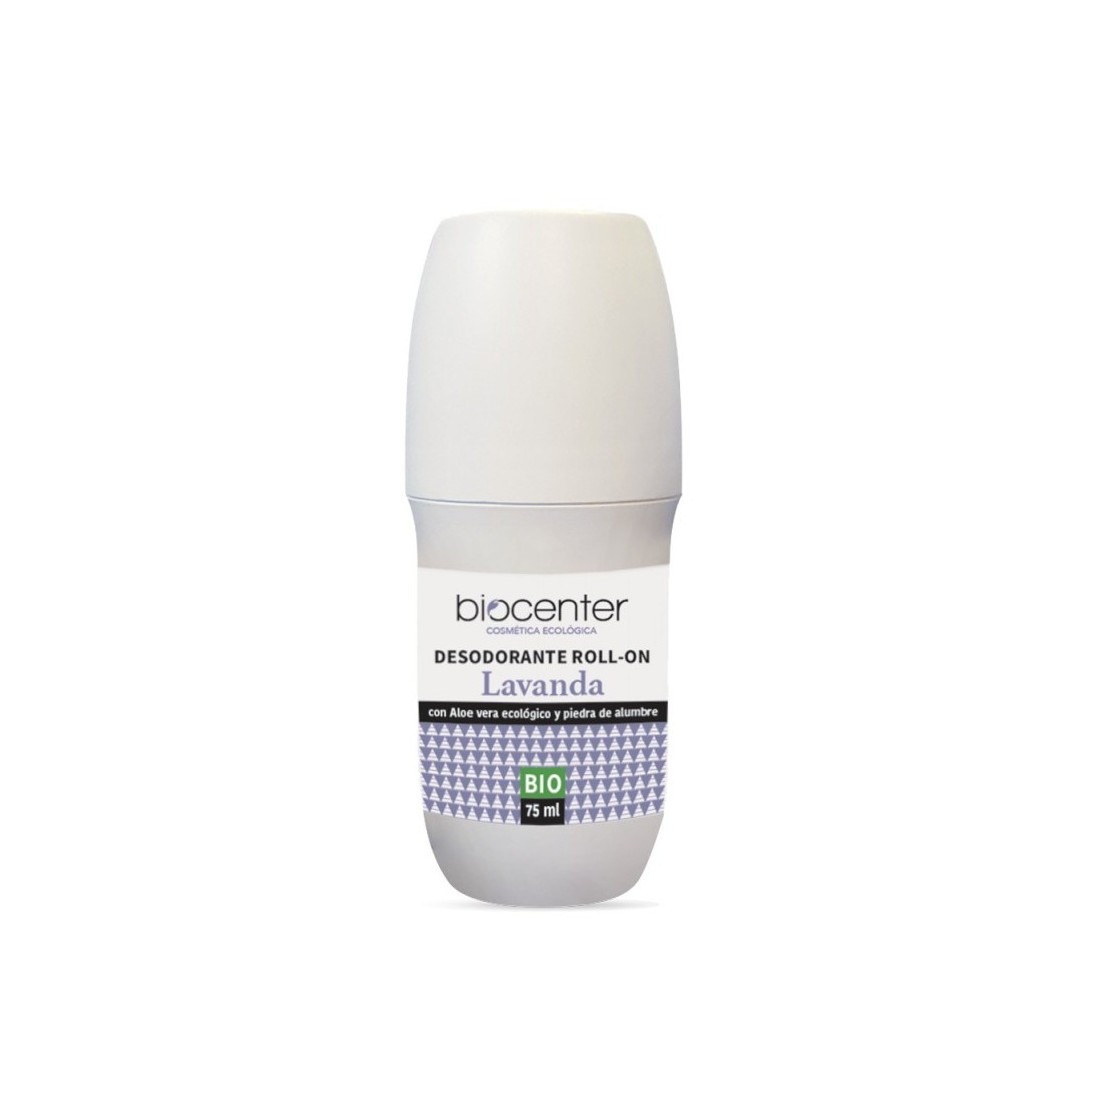 Ecologische deodorant on Lavender,